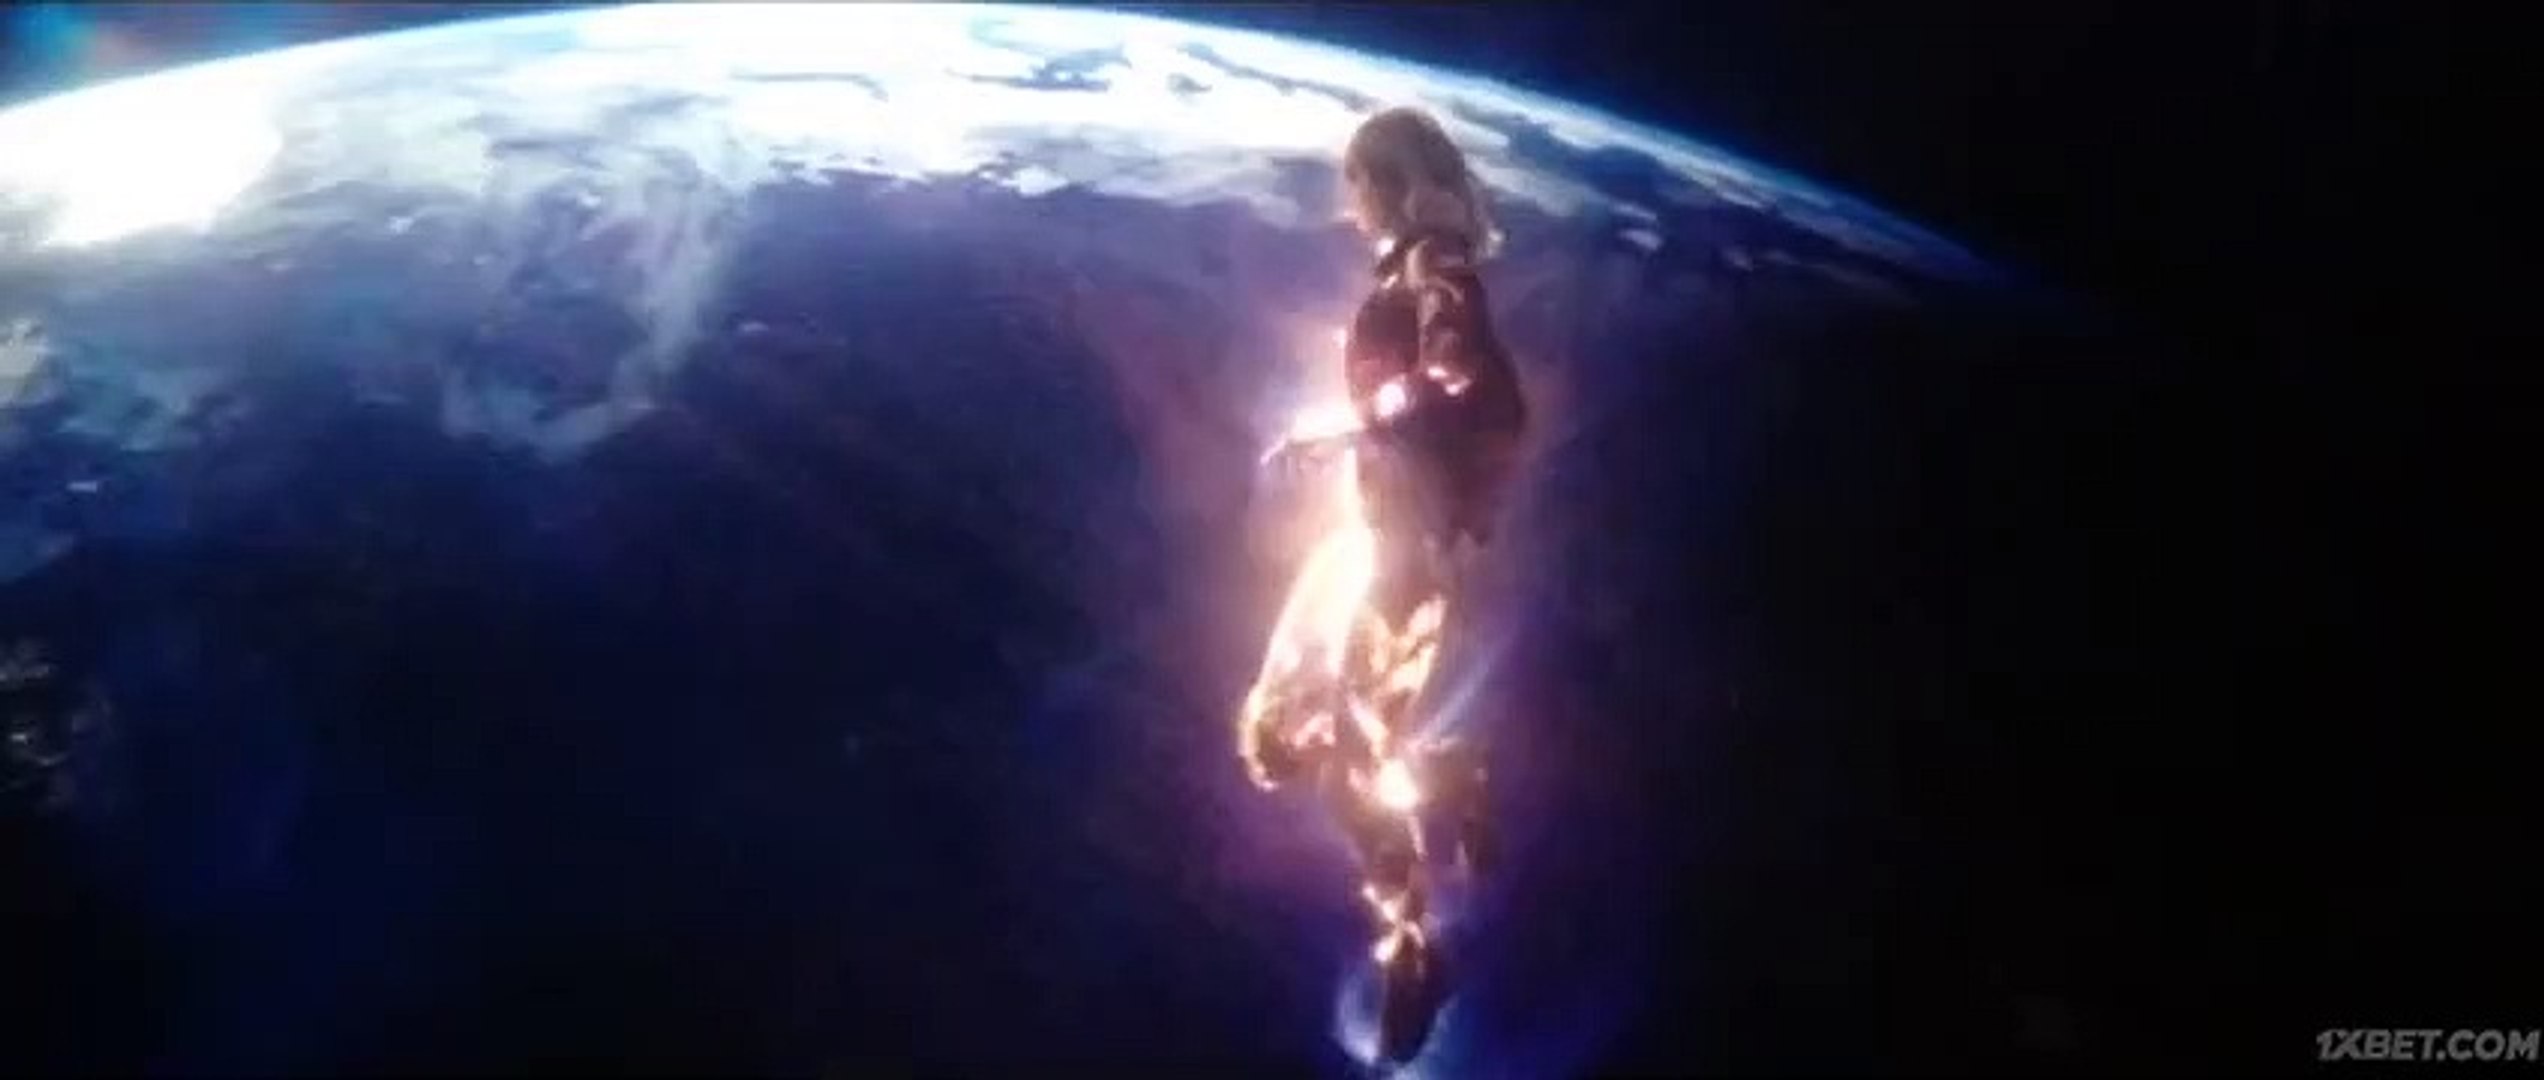 Captain Marvel (2019) Ending Scene - video Dailymotion